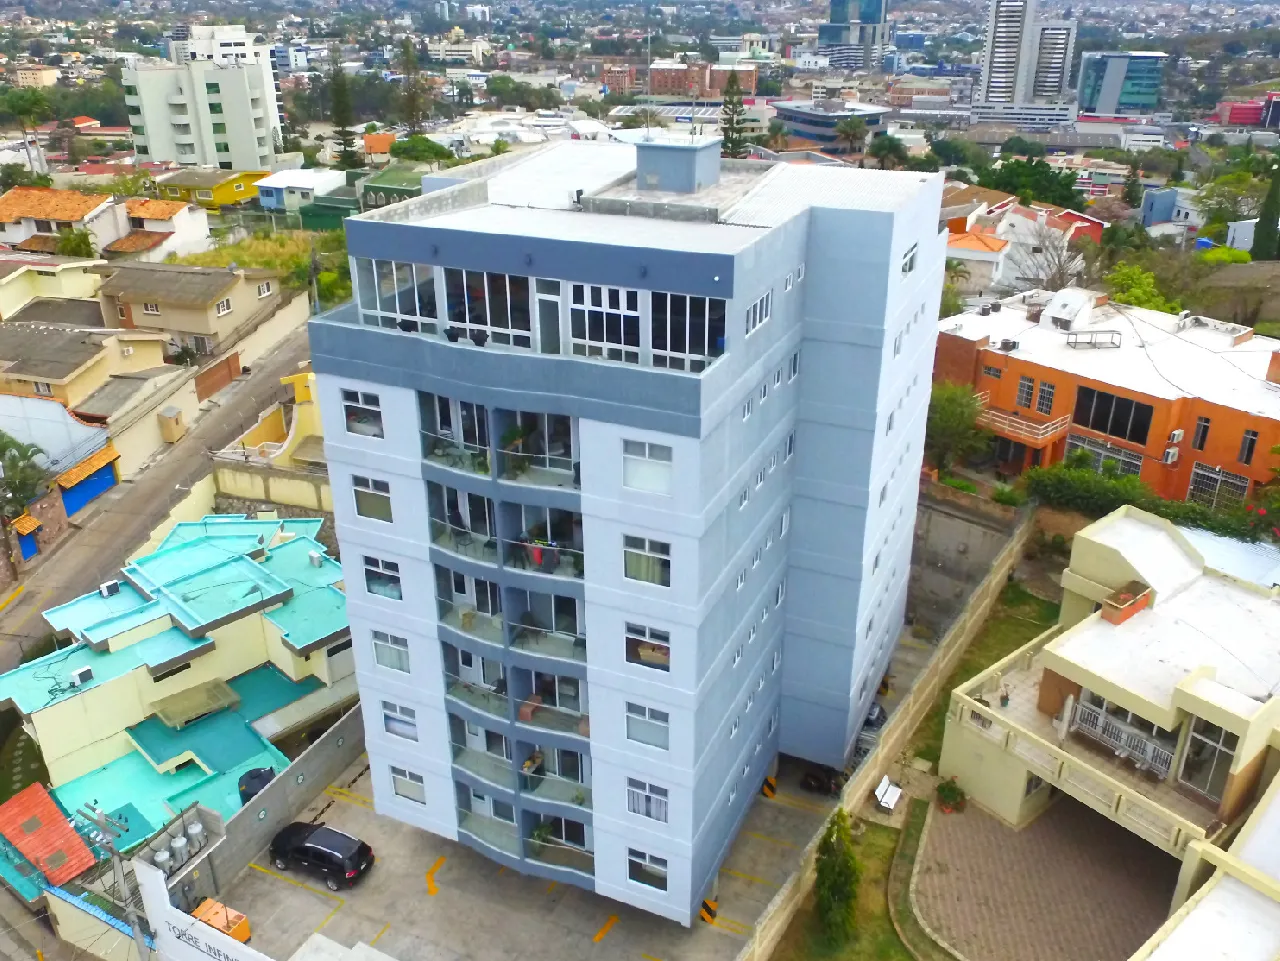 Torre infinito ubicado en un zona exclusiva, cuenta con una fachada de color azul y ofrece apartamentos modernos con vistas a la ciudad.